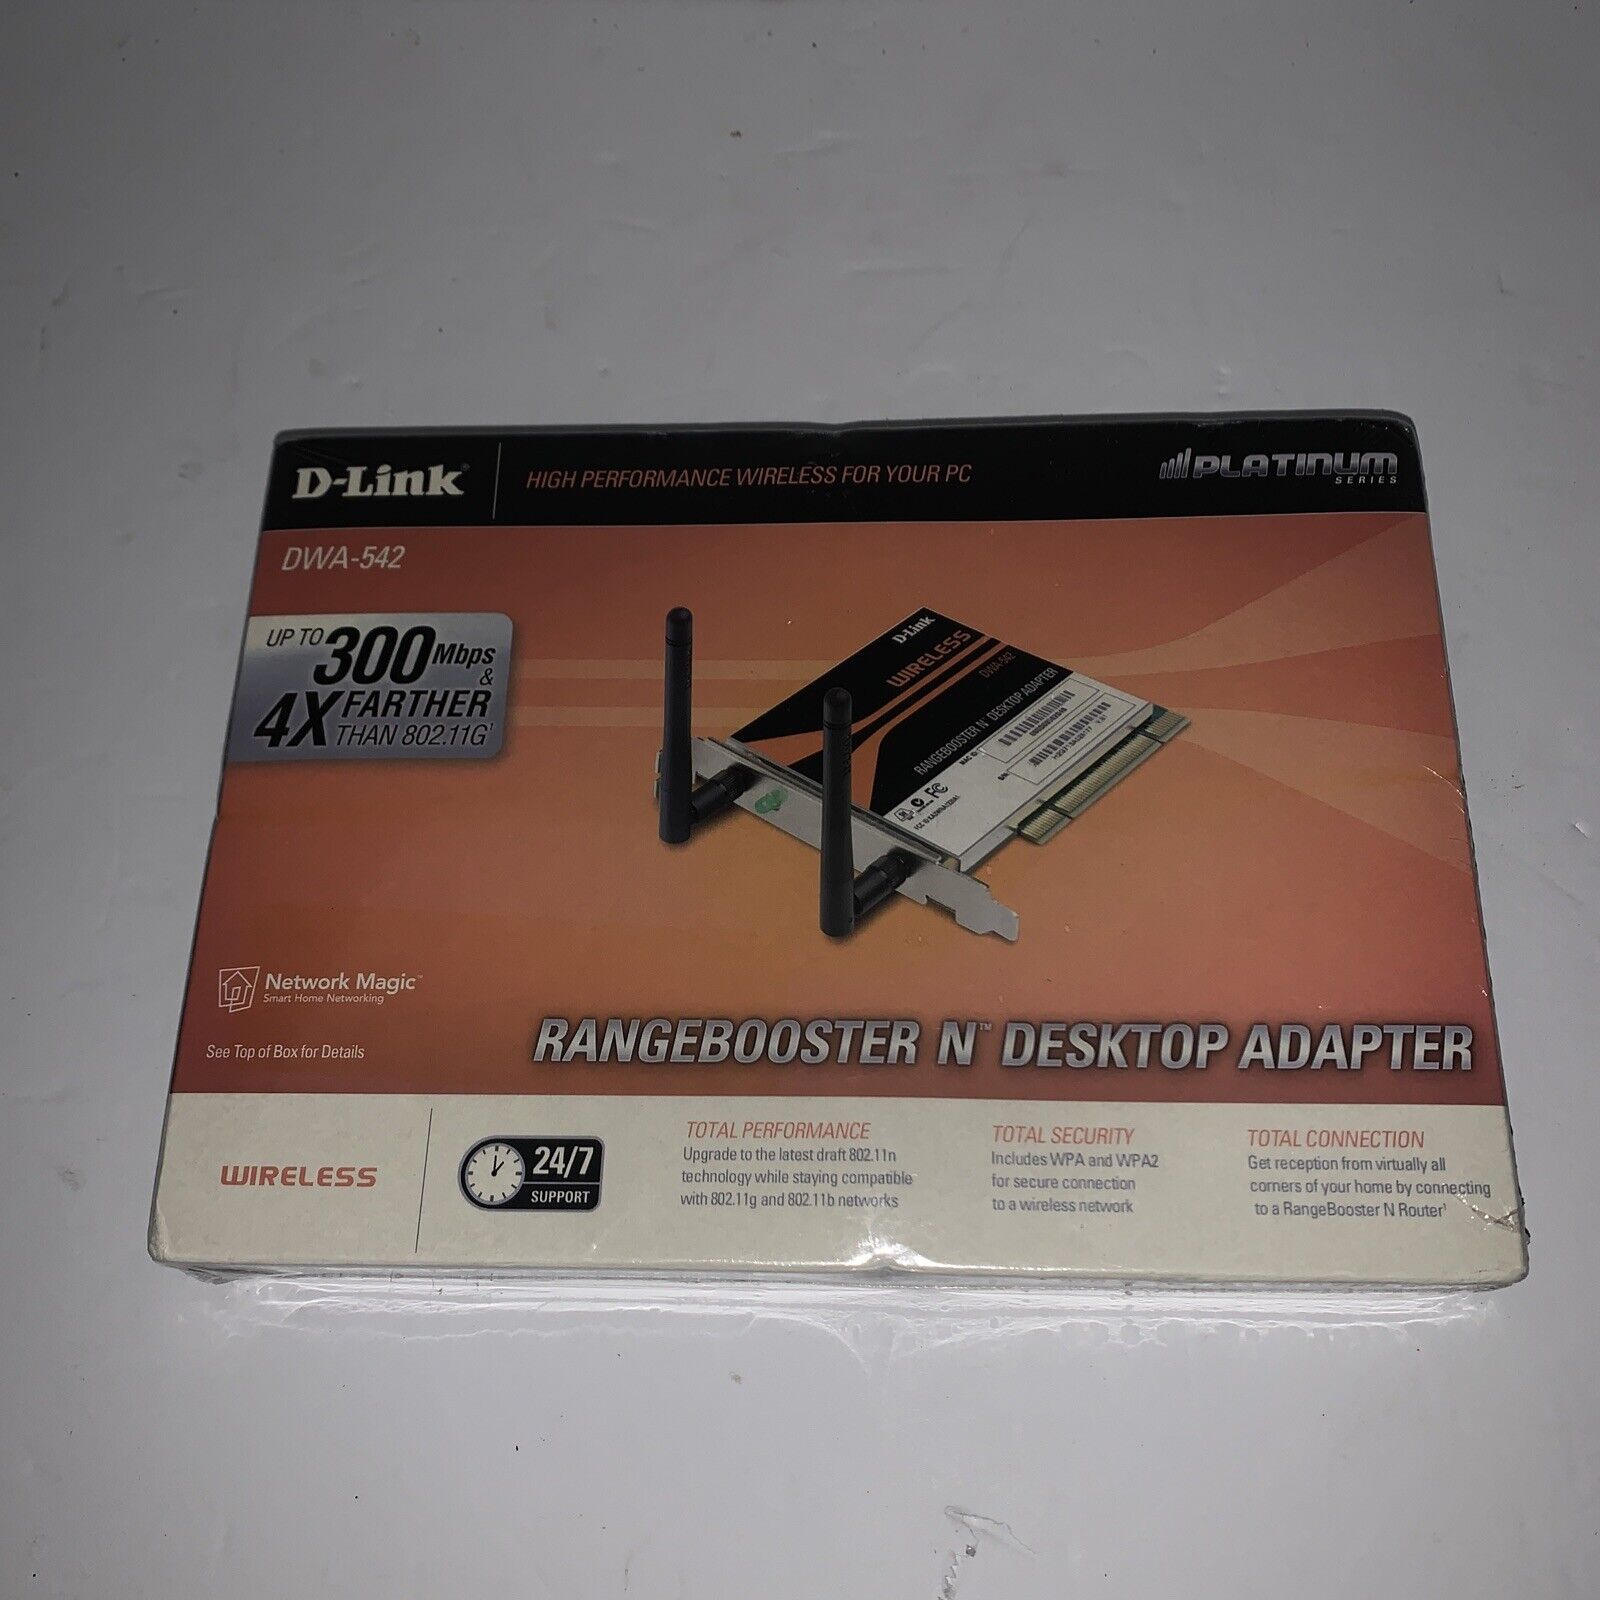 D-Link RangeBooster Wireless N USB Adapter DWA-542 PC Wireless- NEW Sealed